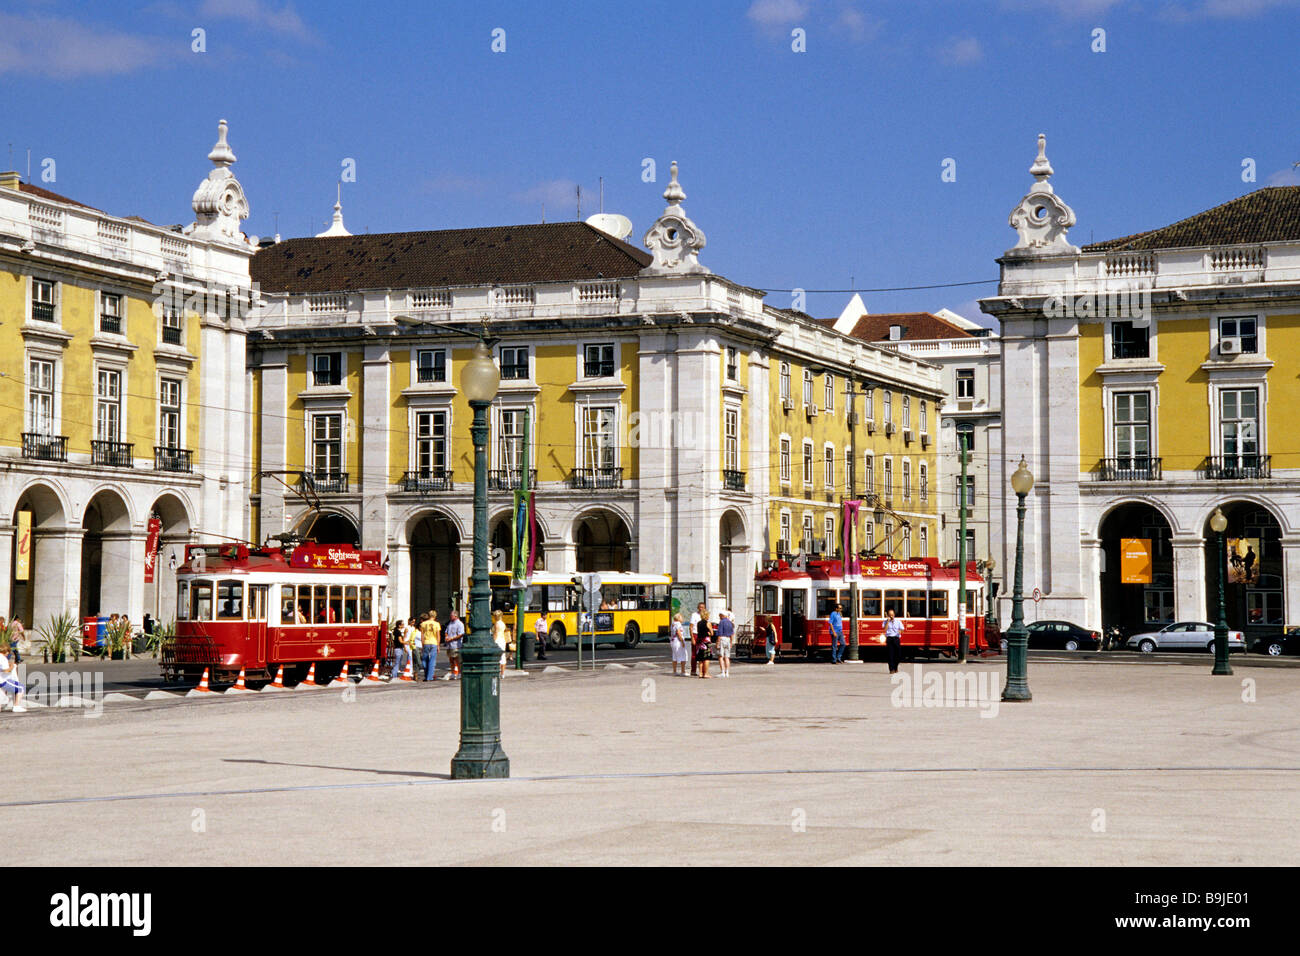 Praca do Comercio, Terreiro do Paco, centro commerciale con edifici porticati, vecchi tram nel centro storico di Lisbona, Lisboa, P Foto Stock